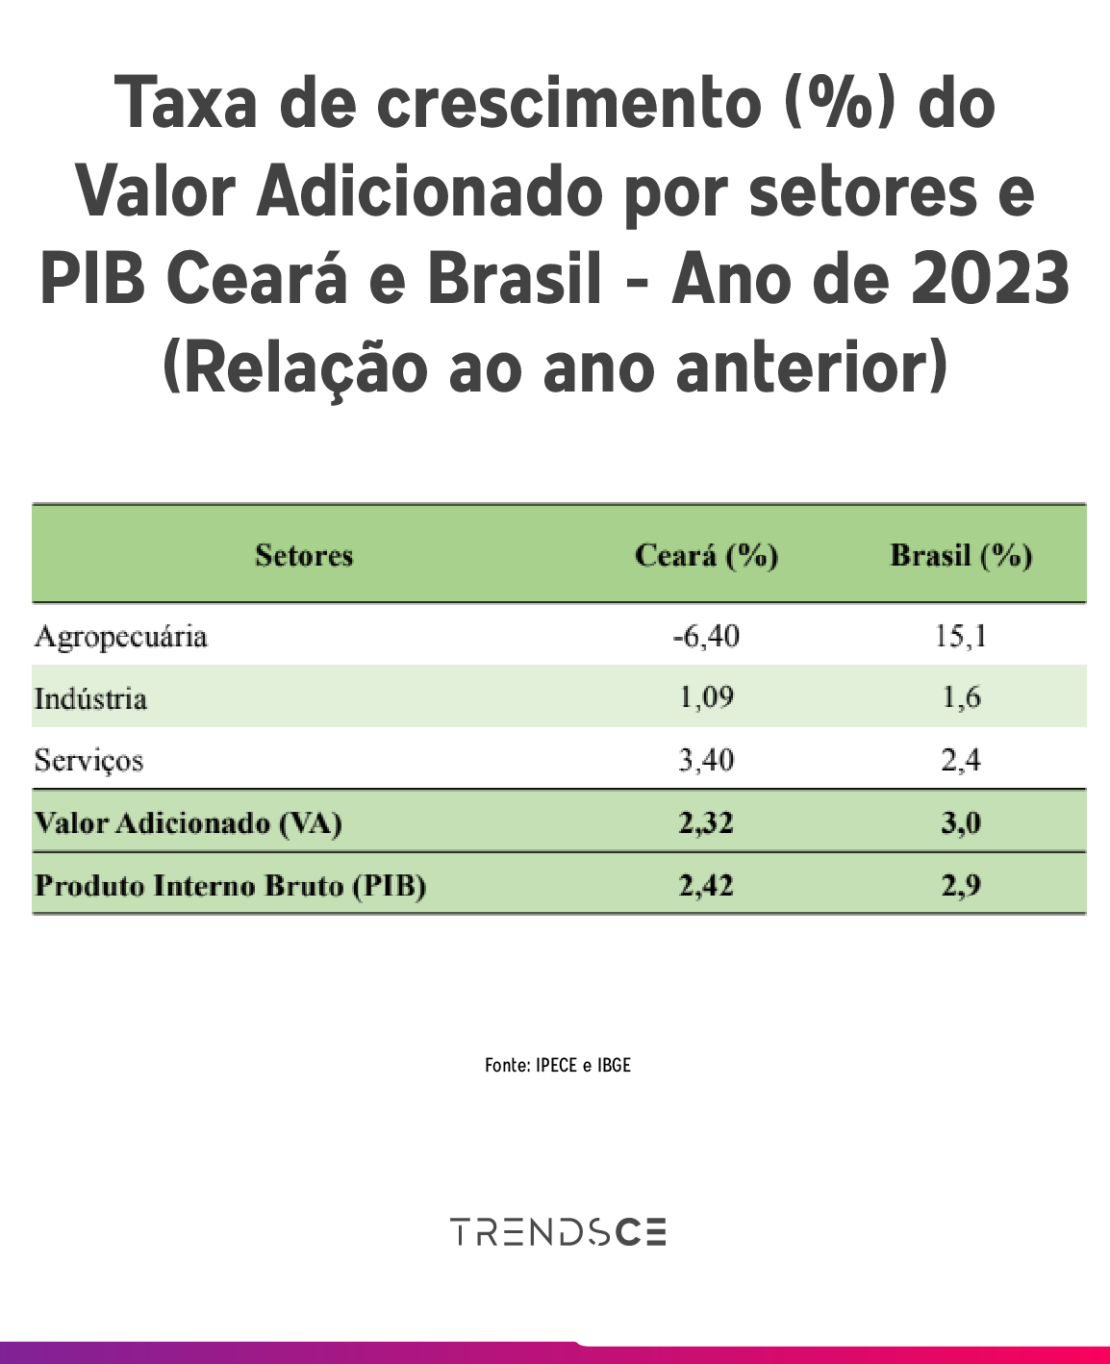 tabela com a taxa de crescimento do valor adicionado por setores e PIB Ceará e Brasil de 2023.